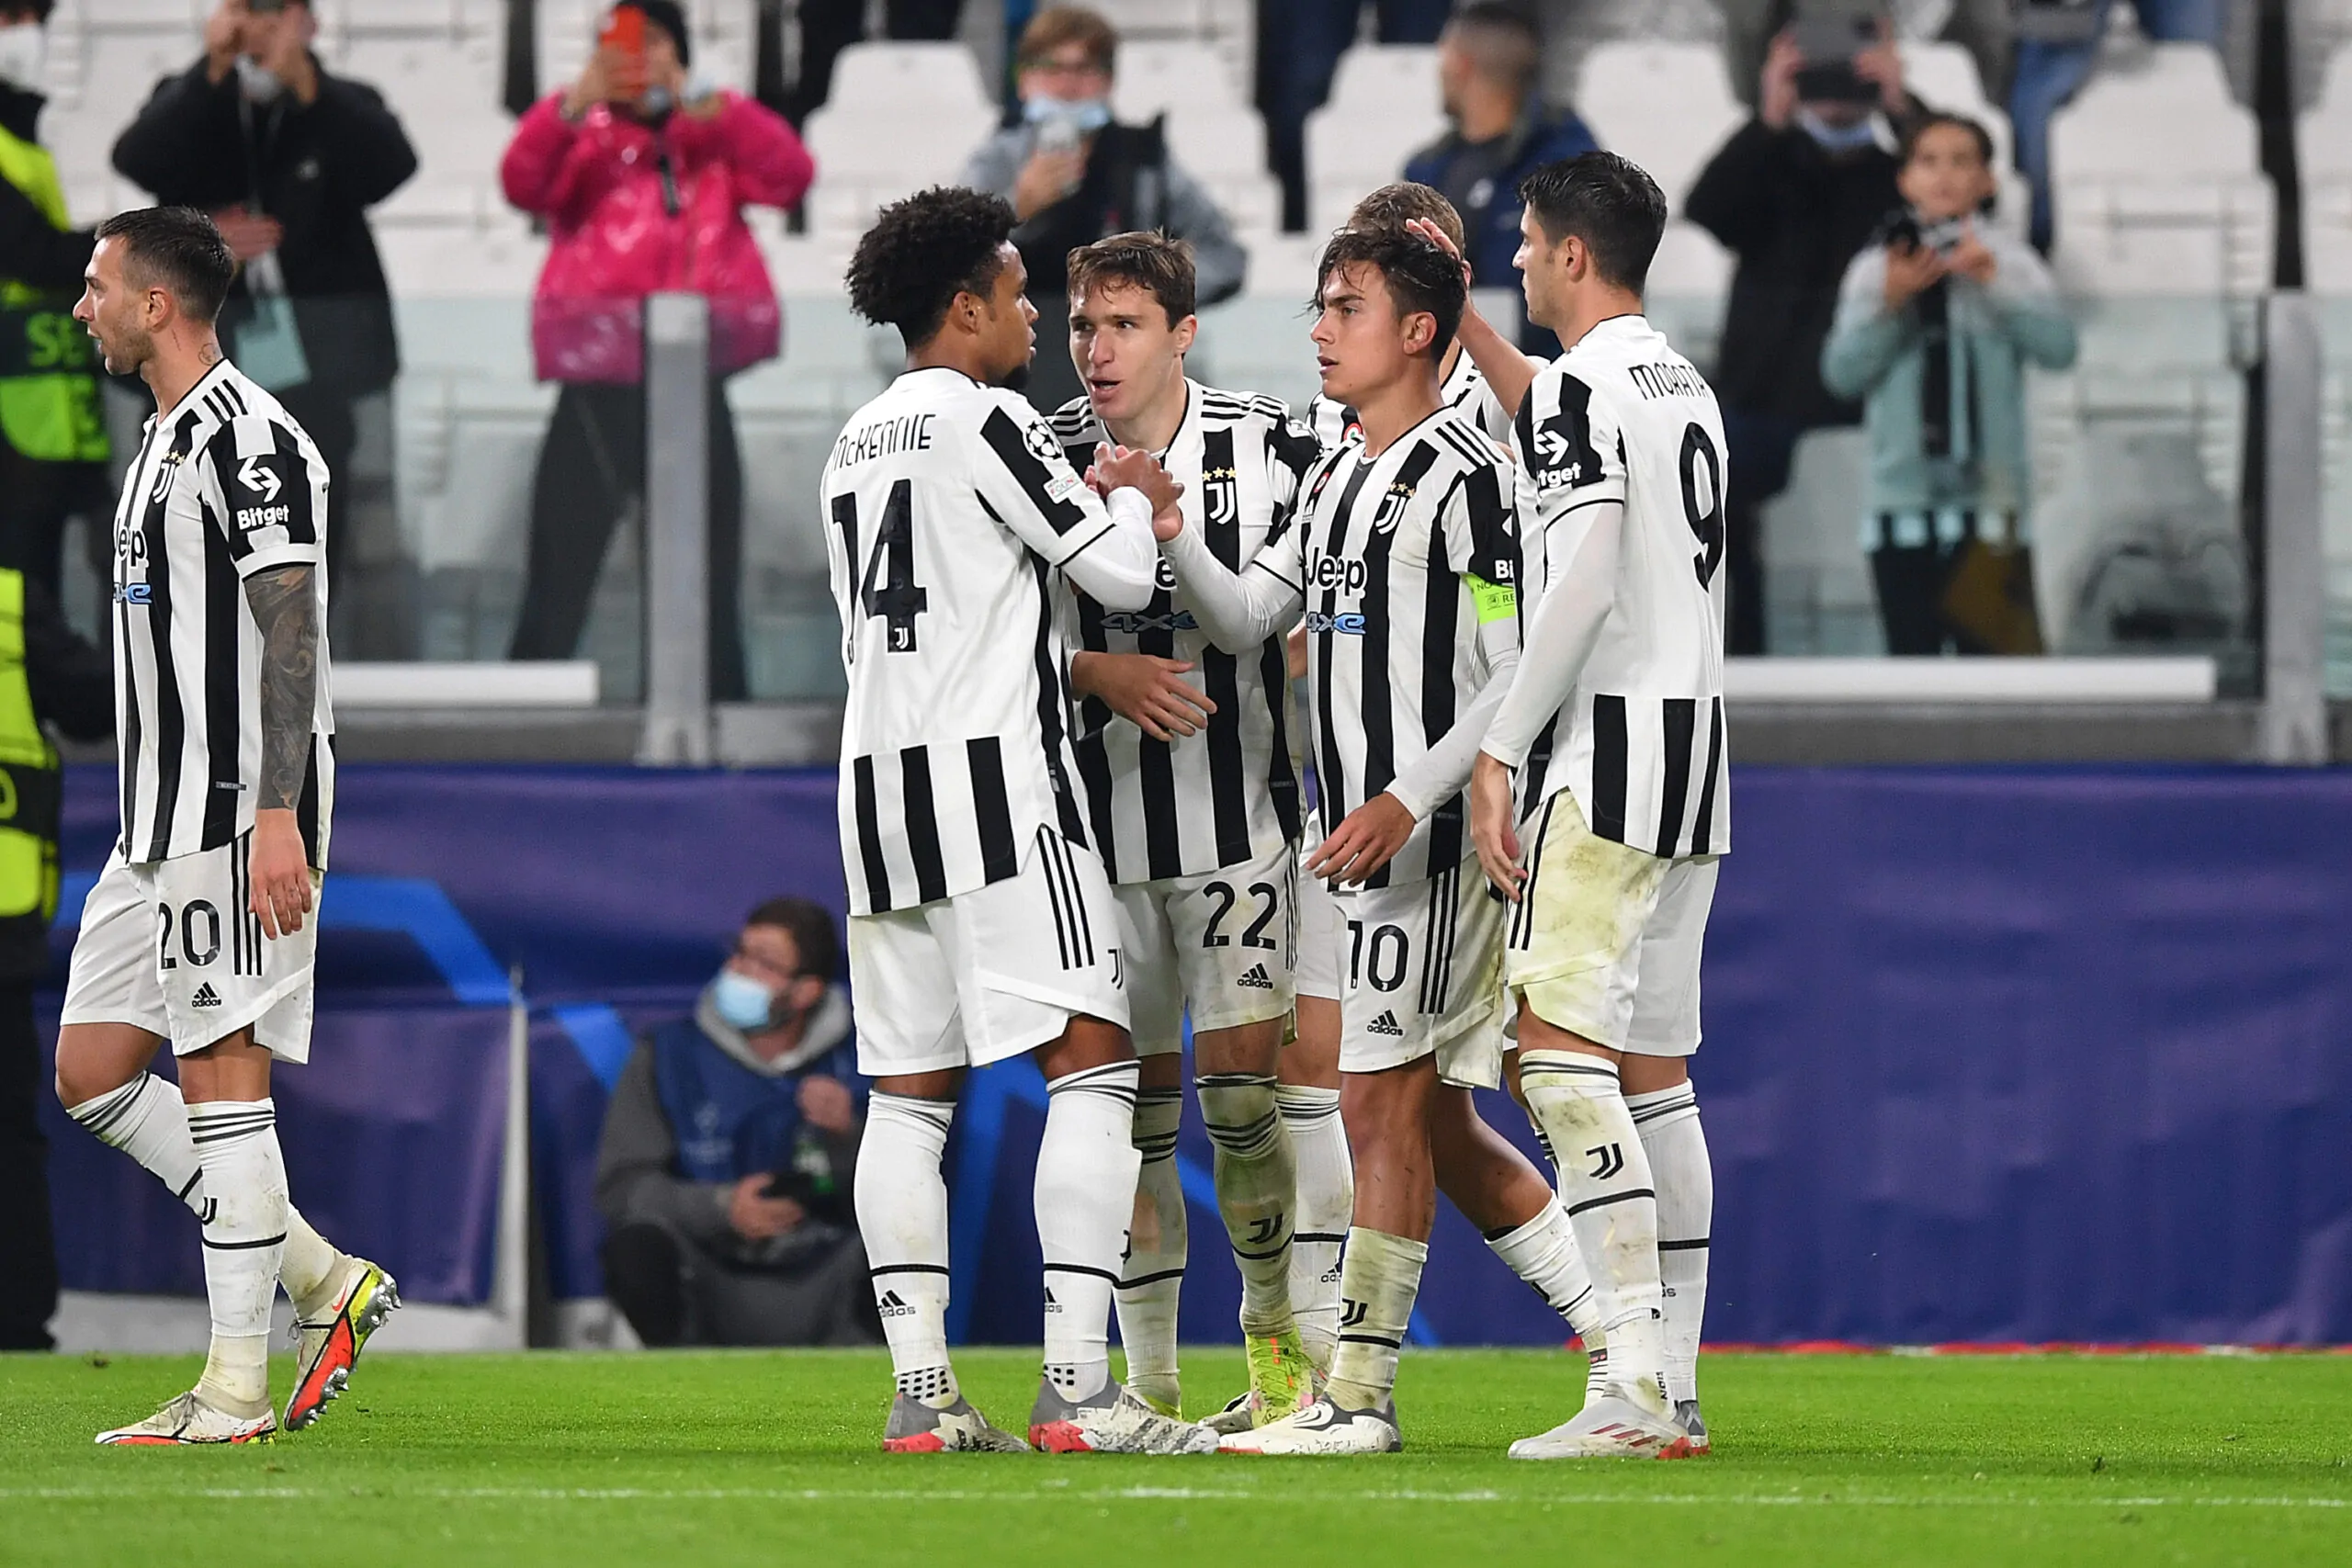 Chelsea-Juventus, la moviola del match: due episodi dubbi